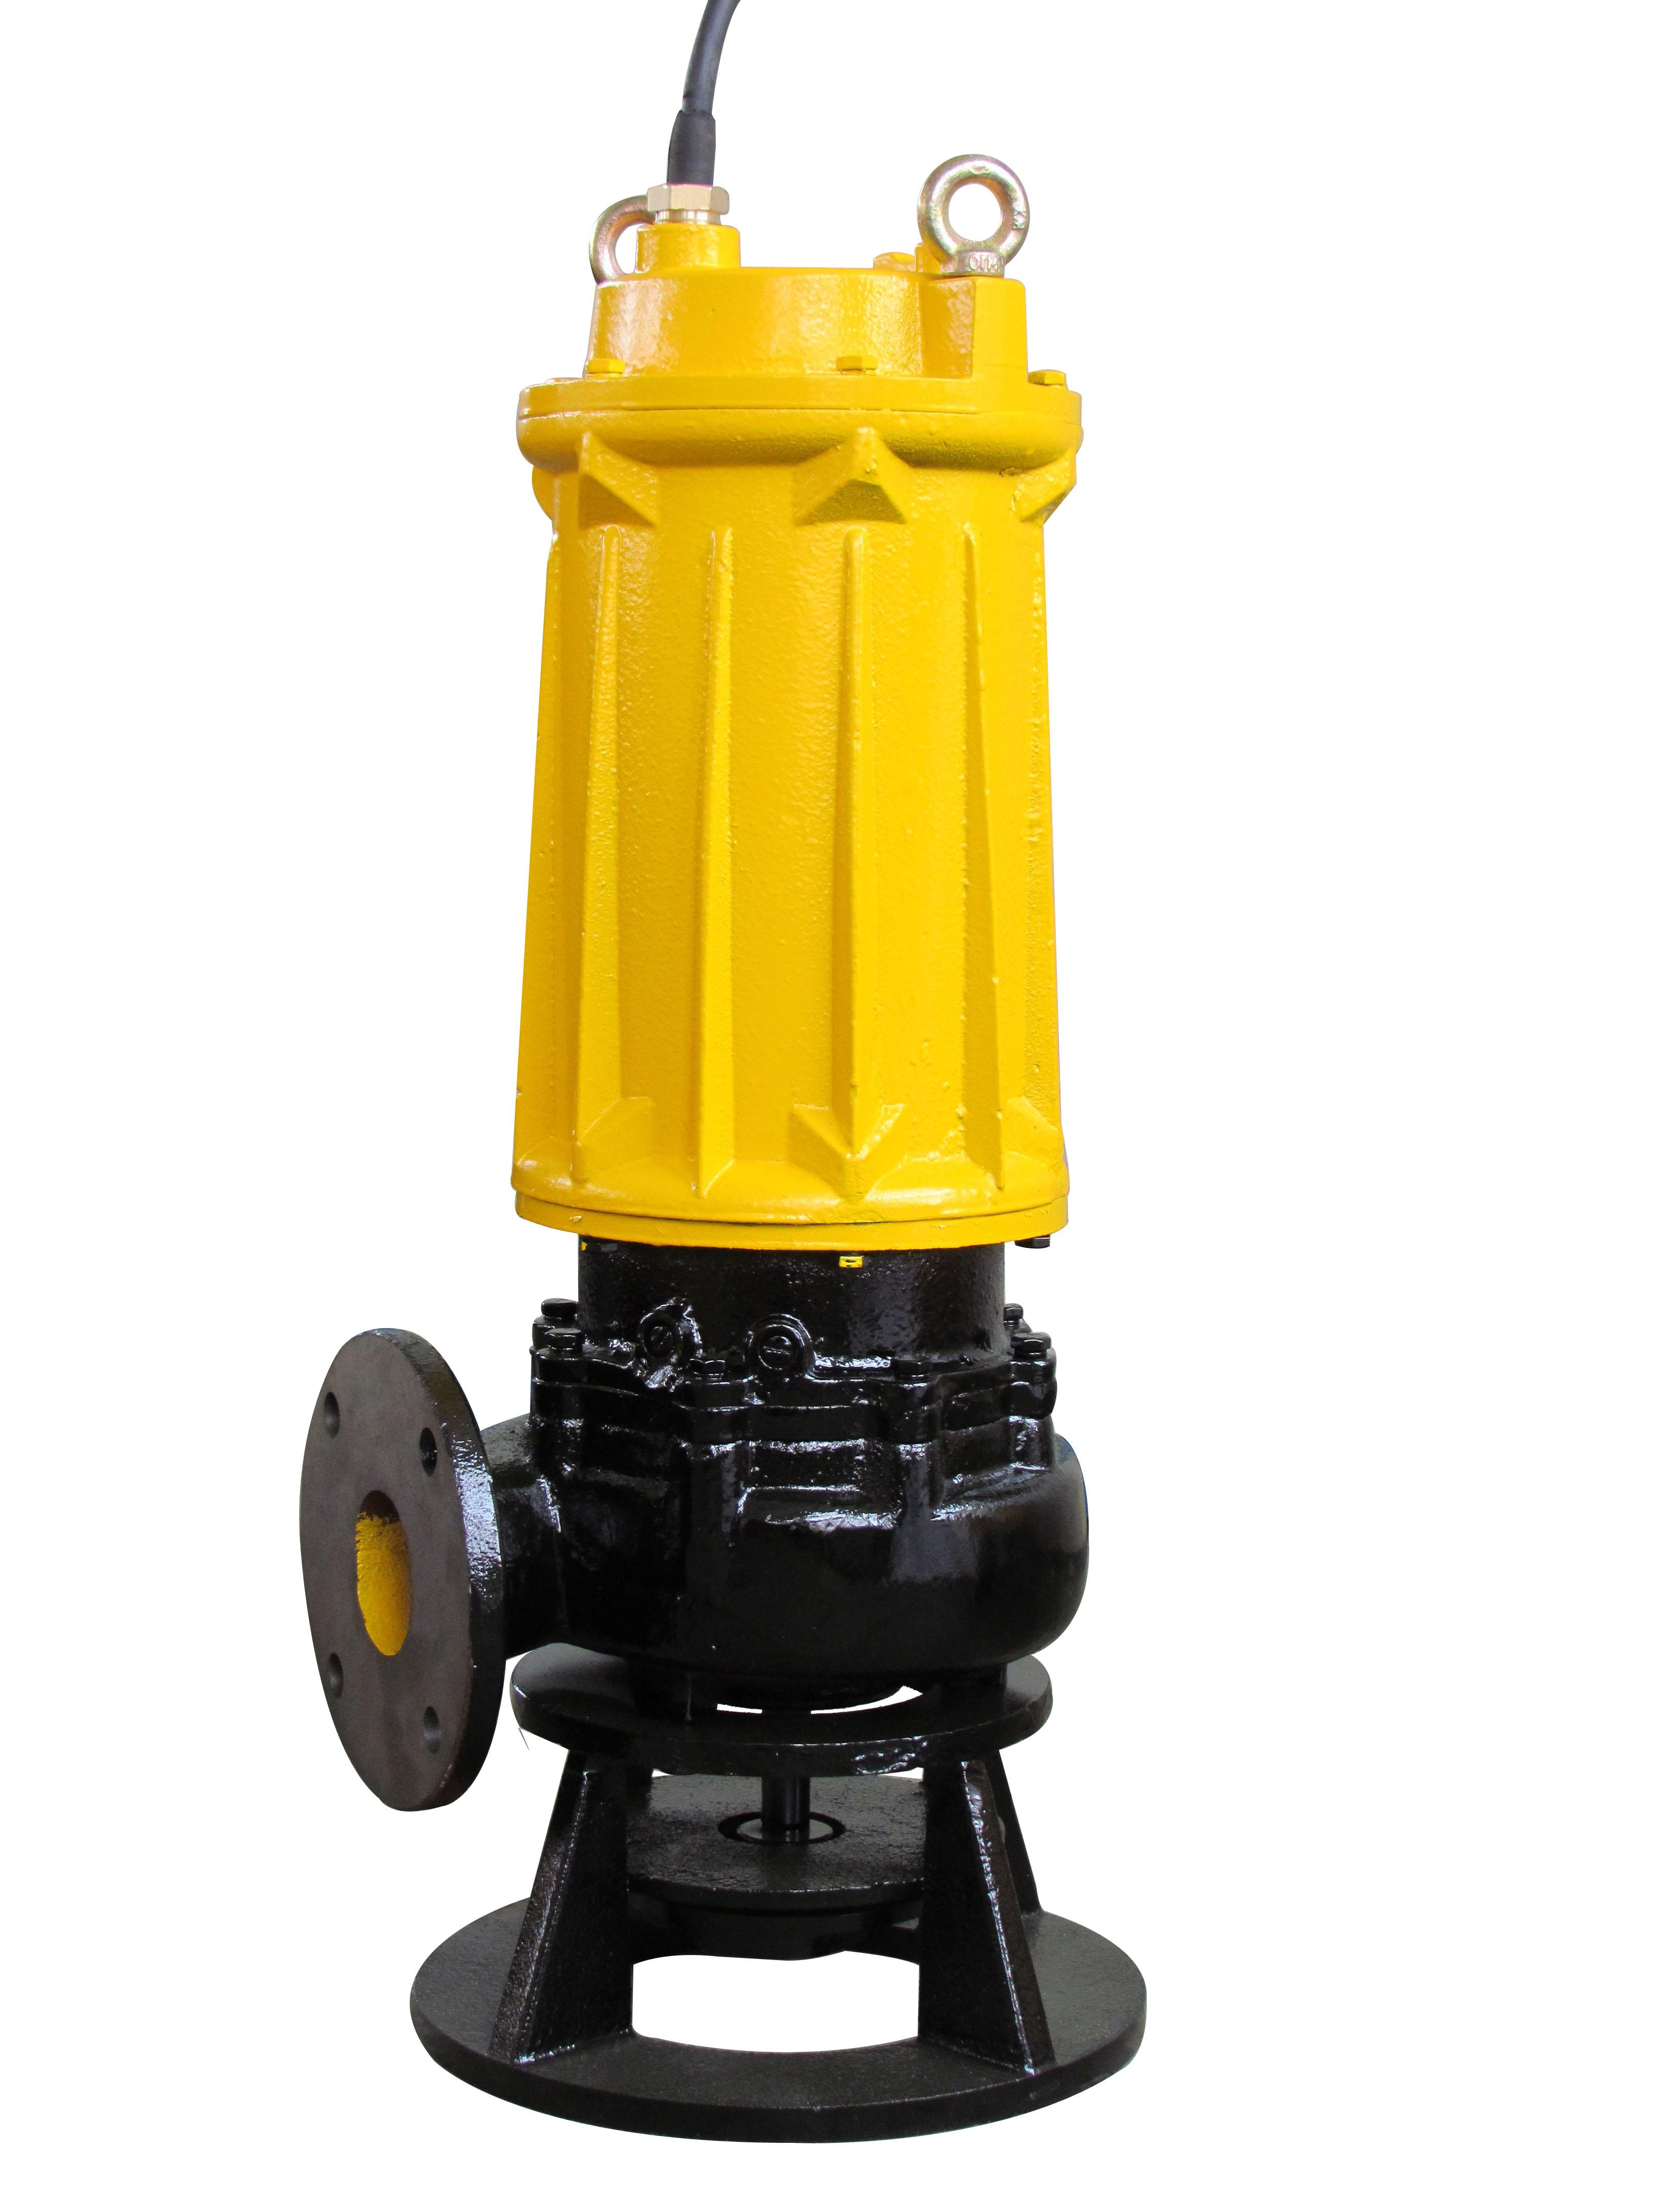 湖南朝阳机电WQ10-7-0.75污水污物潜水电泵 高效节能泵 耐腐蚀潜水泵